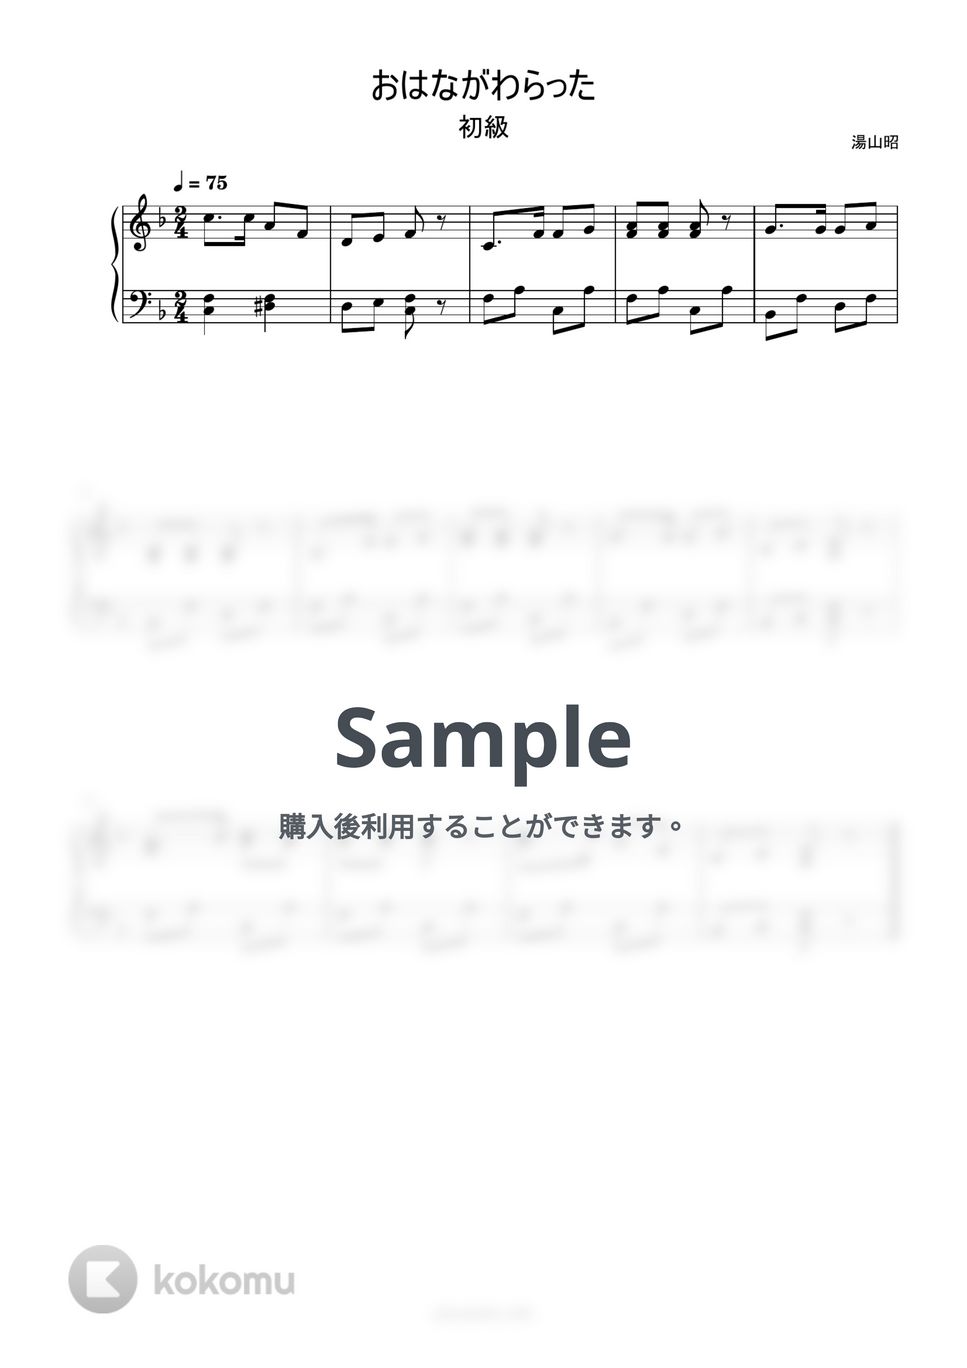 おはながわらった (簡単楽譜) by ピアノ塾